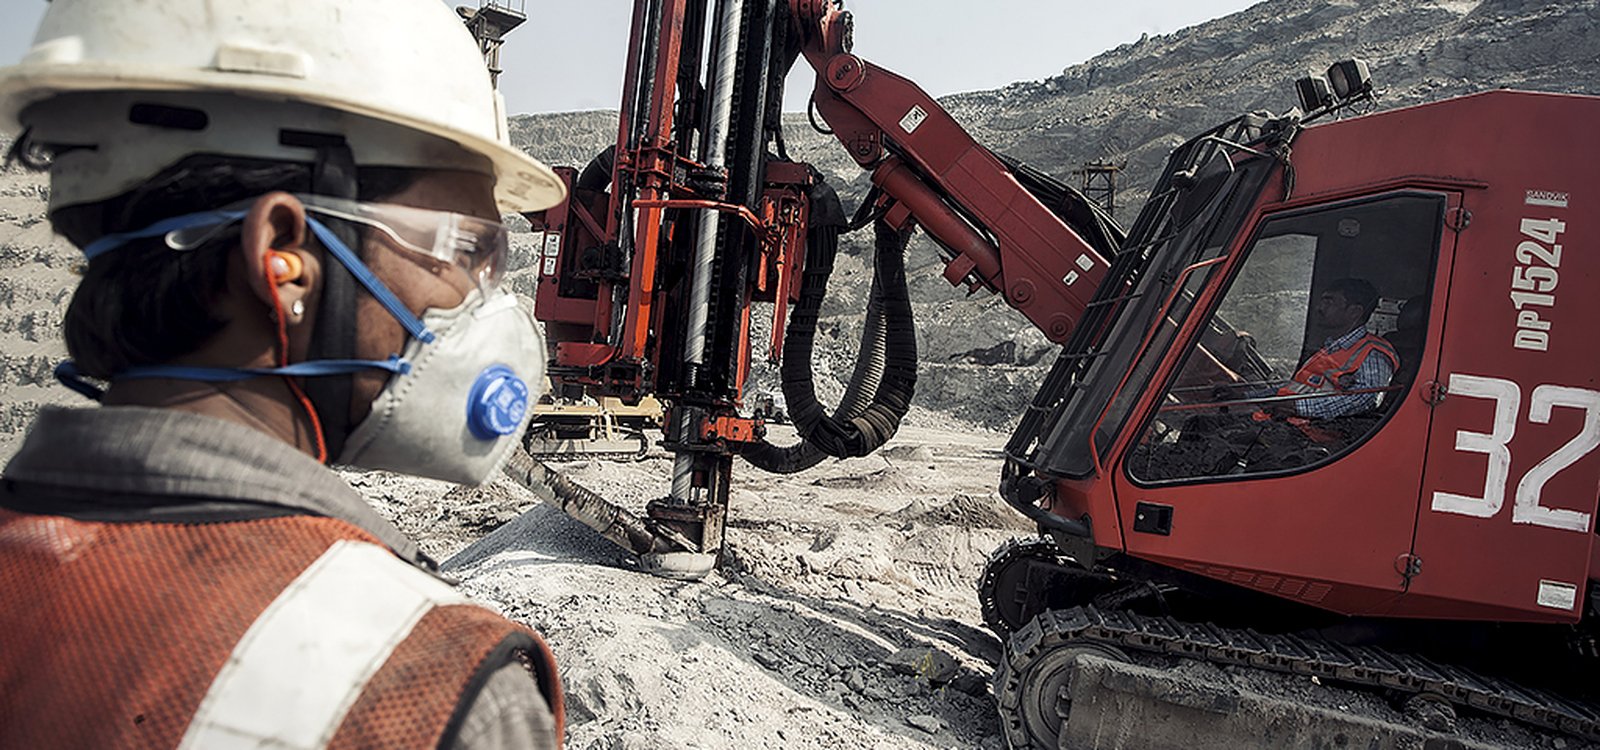 Sandvik DP1524 provides more than 18,000 metres of drilling per month.